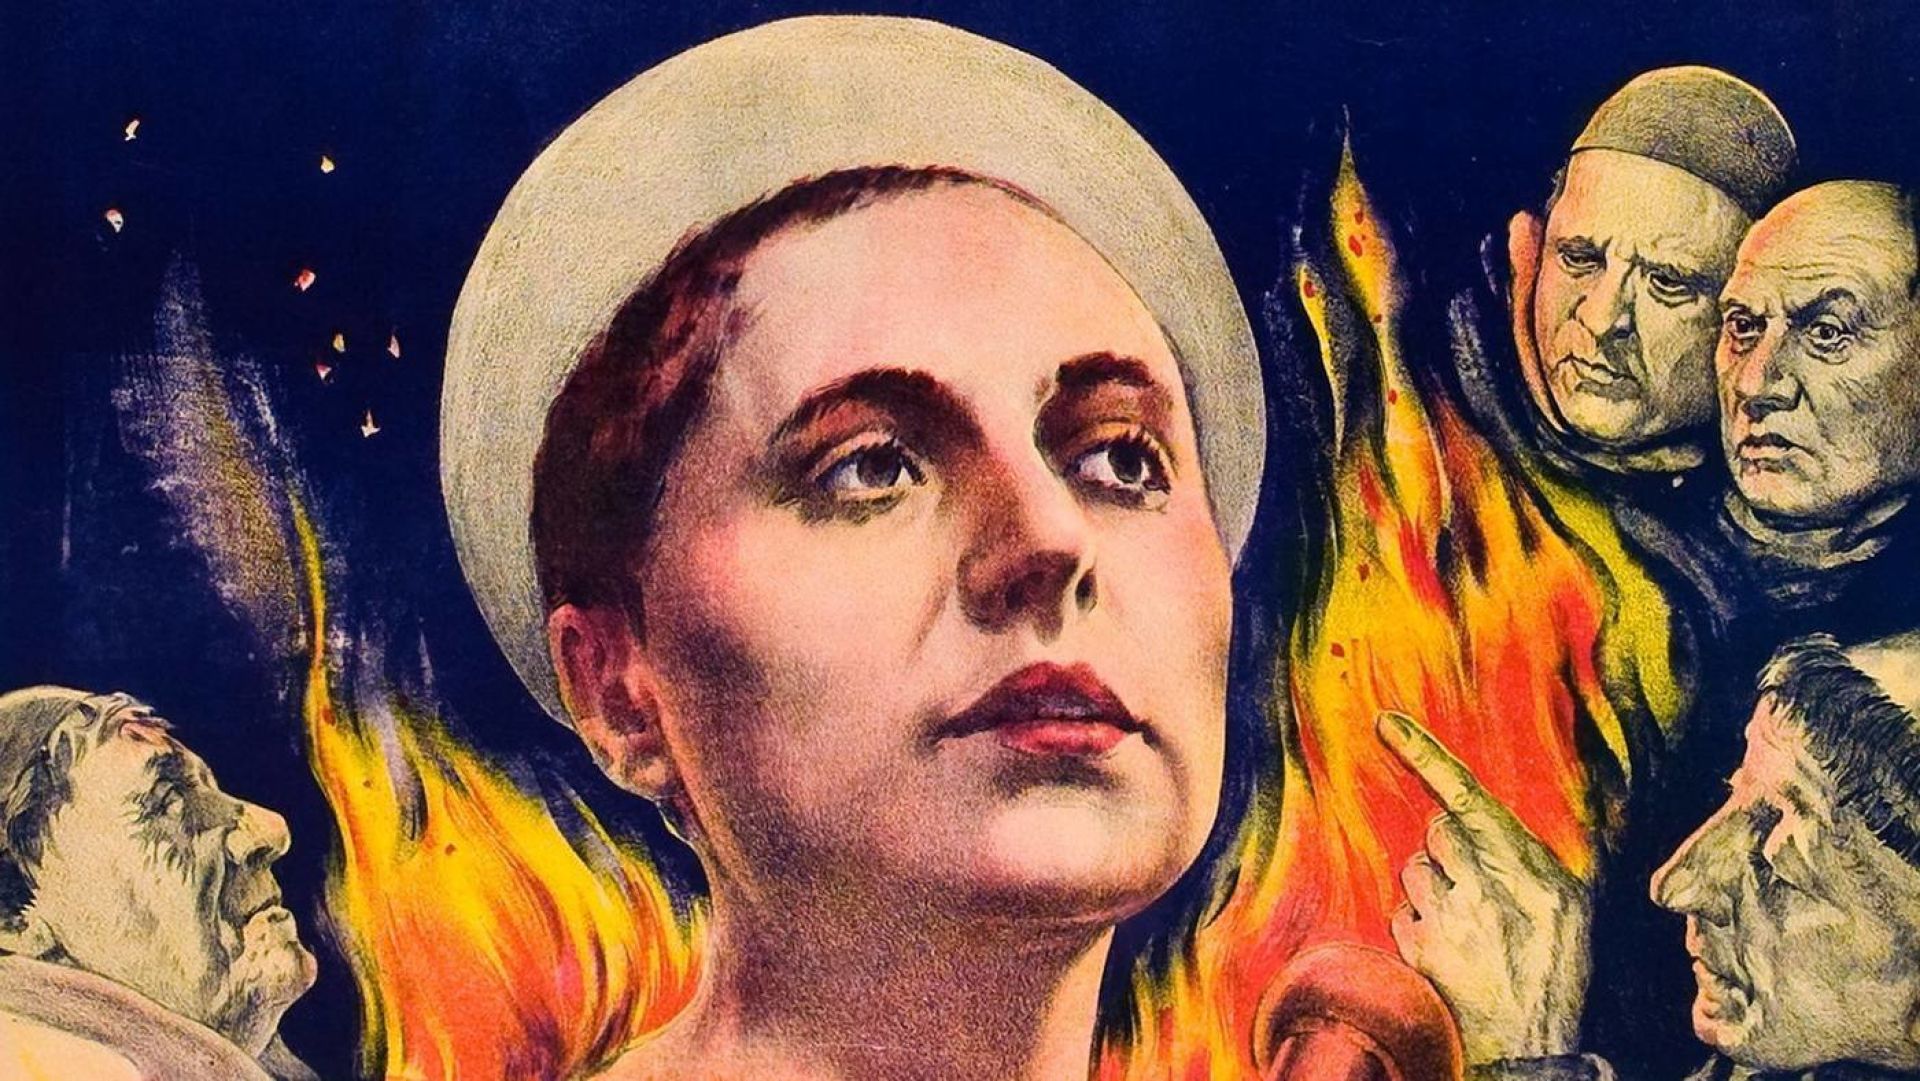 دانلود فیلم The Passion of Joan of Arc 1928